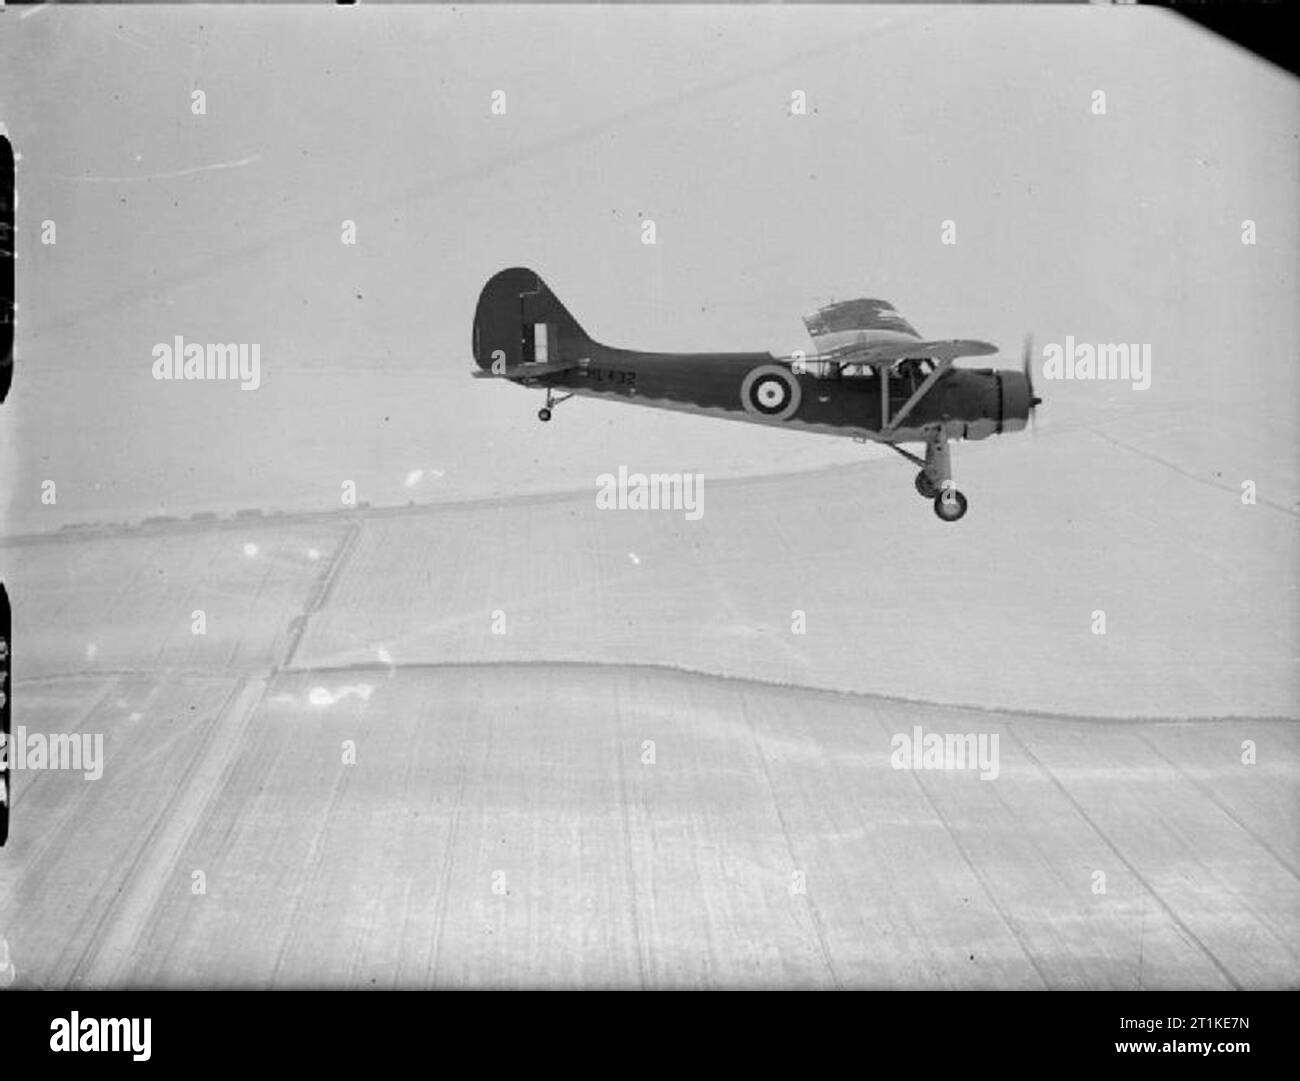 Amerikanische Flugzeuge der Royal Air Force Service 1939-1945 - vultee-stinson Modell 74 aufmerksam. Wachsam, HL 432, der Luftkampf Entwicklungseinheit in Duxford, Cambridgeshire, im Flug. Stockfoto